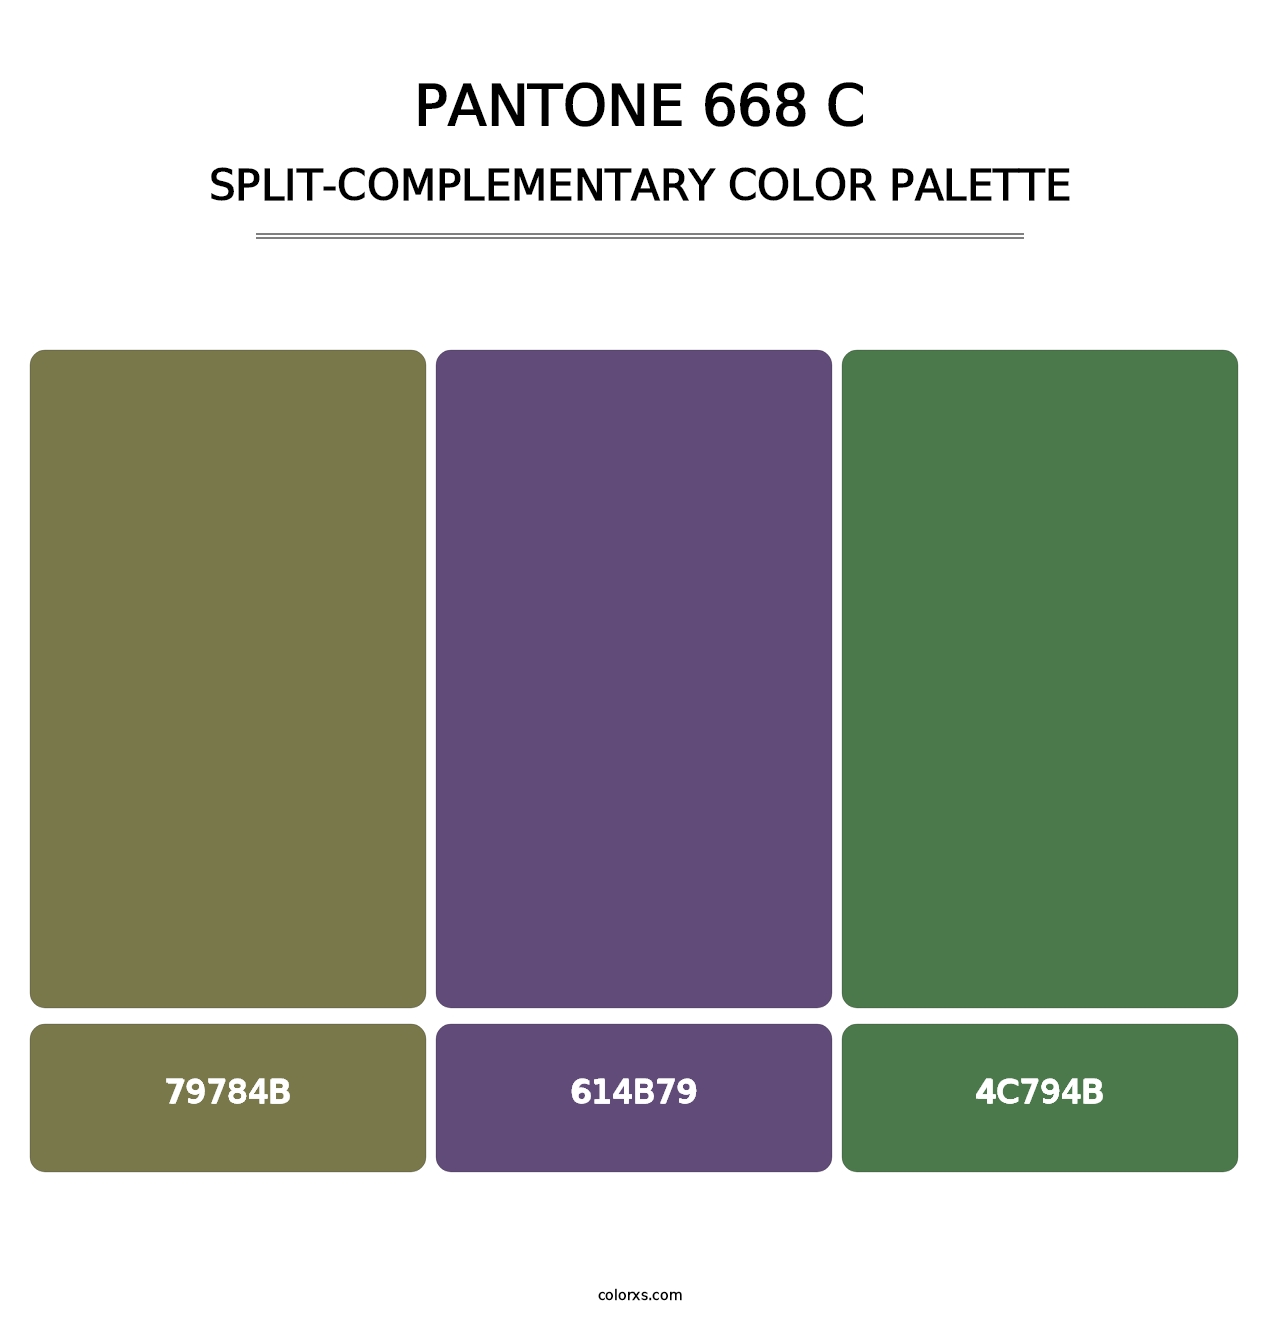 PANTONE 668 C - Split-Complementary Color Palette